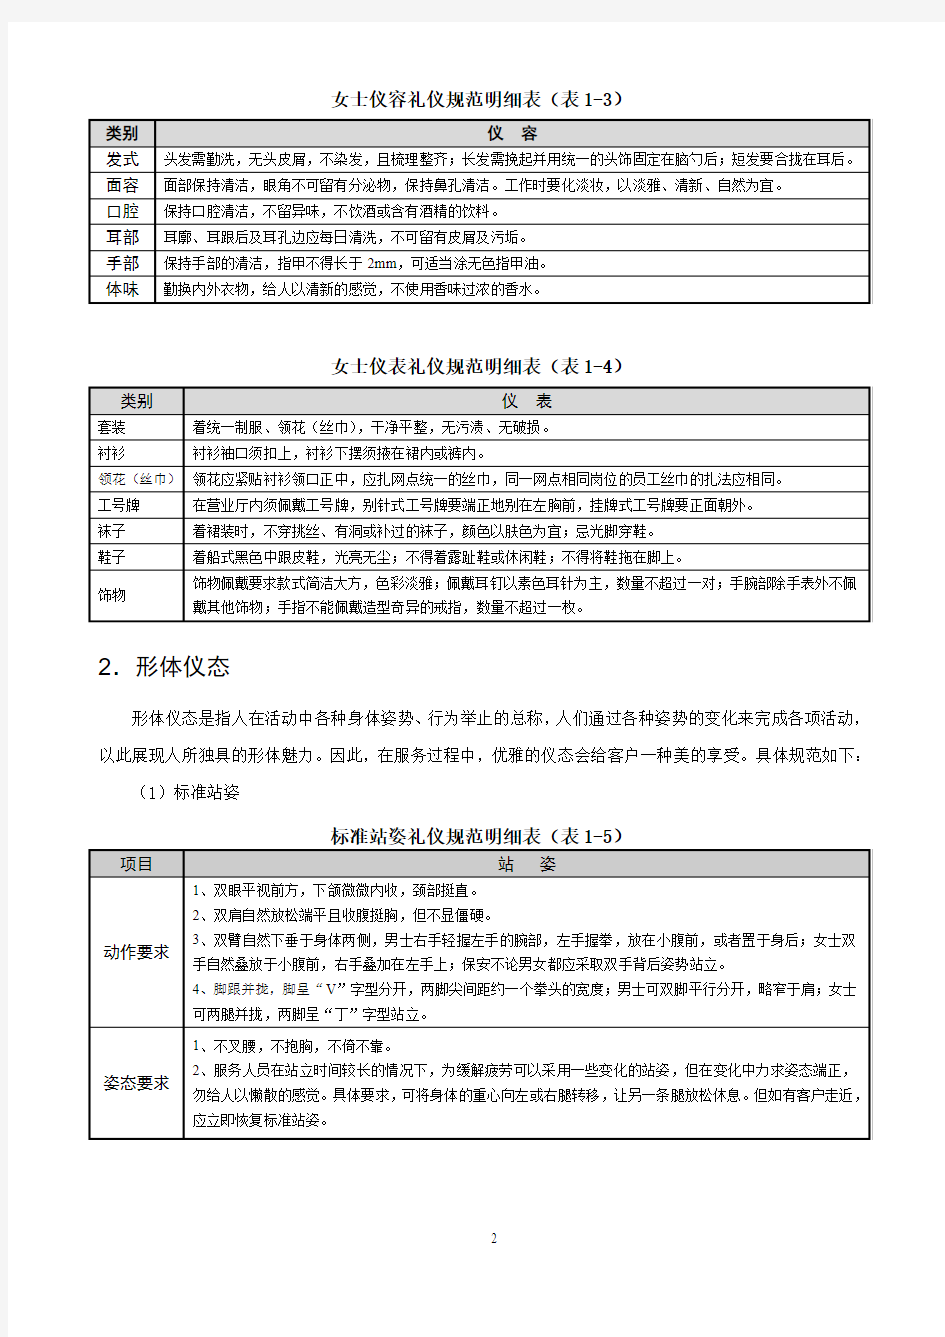 中国银行营业网点基础服务礼仪规范